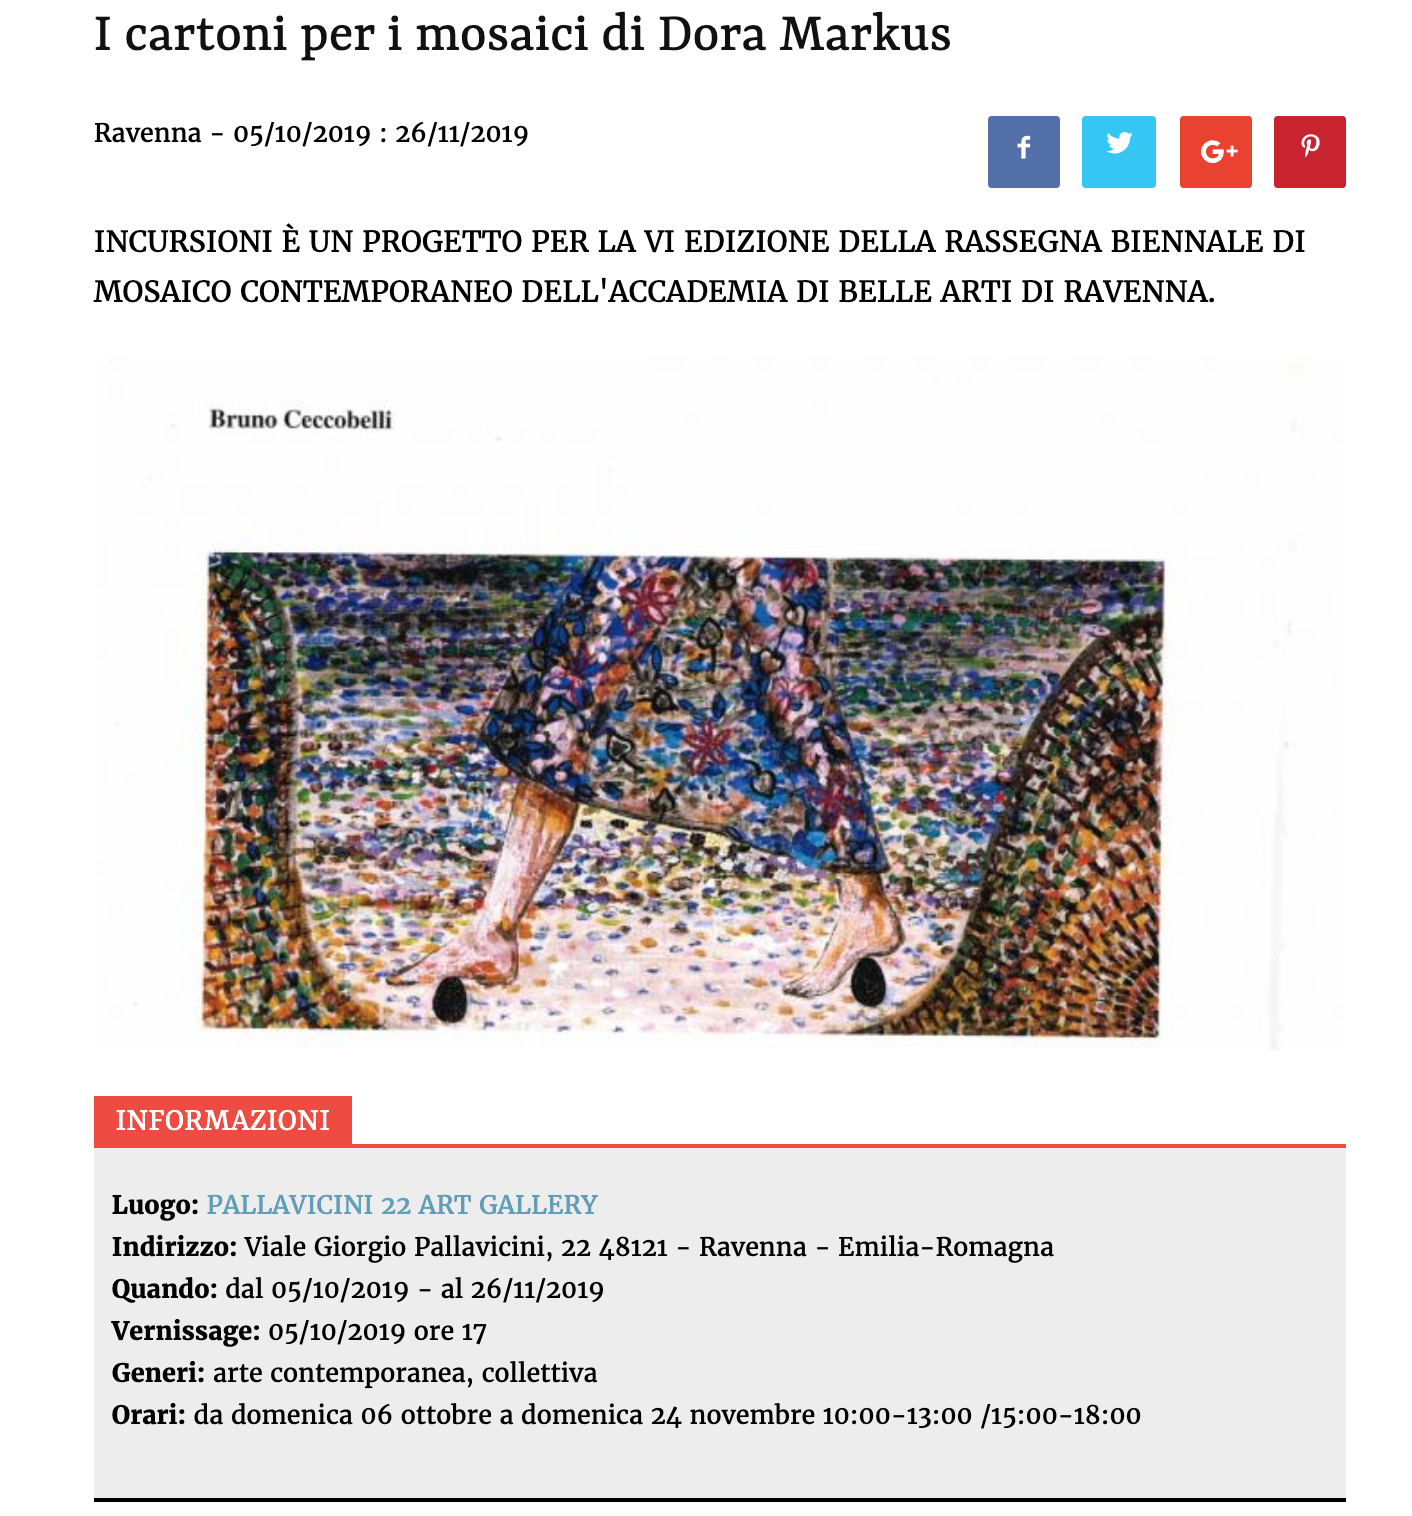 I cartoni per i mosaici di Dora Markus su Artribune | Pallavicini22 spazio espositivo Ravenna